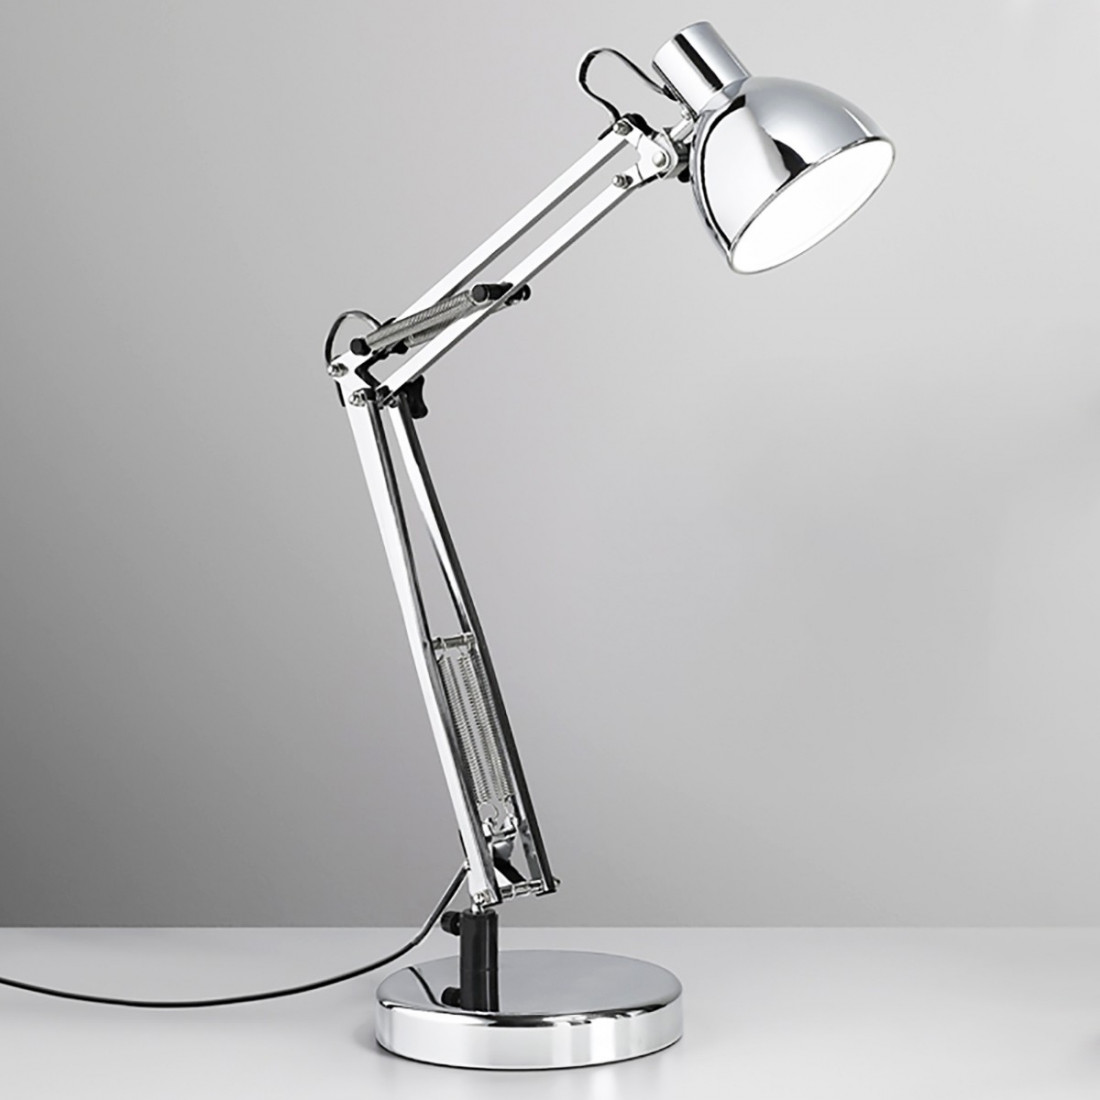 lampade scrivania ufficio: funzionali, moderne, classiche, metallo, legno